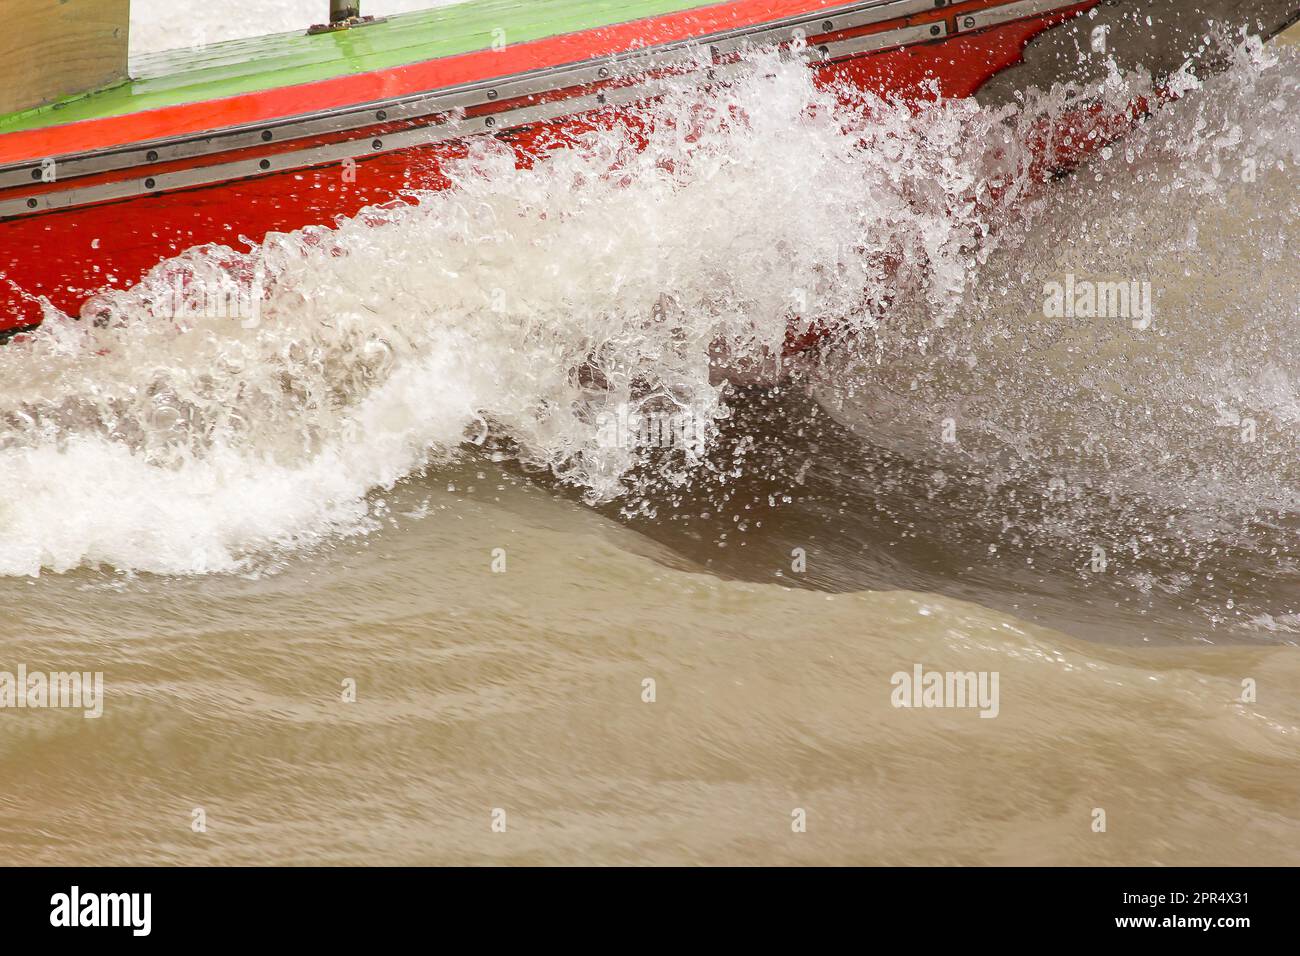 Wasser spritzte von einem Schnellboot im Fluss Stockfoto